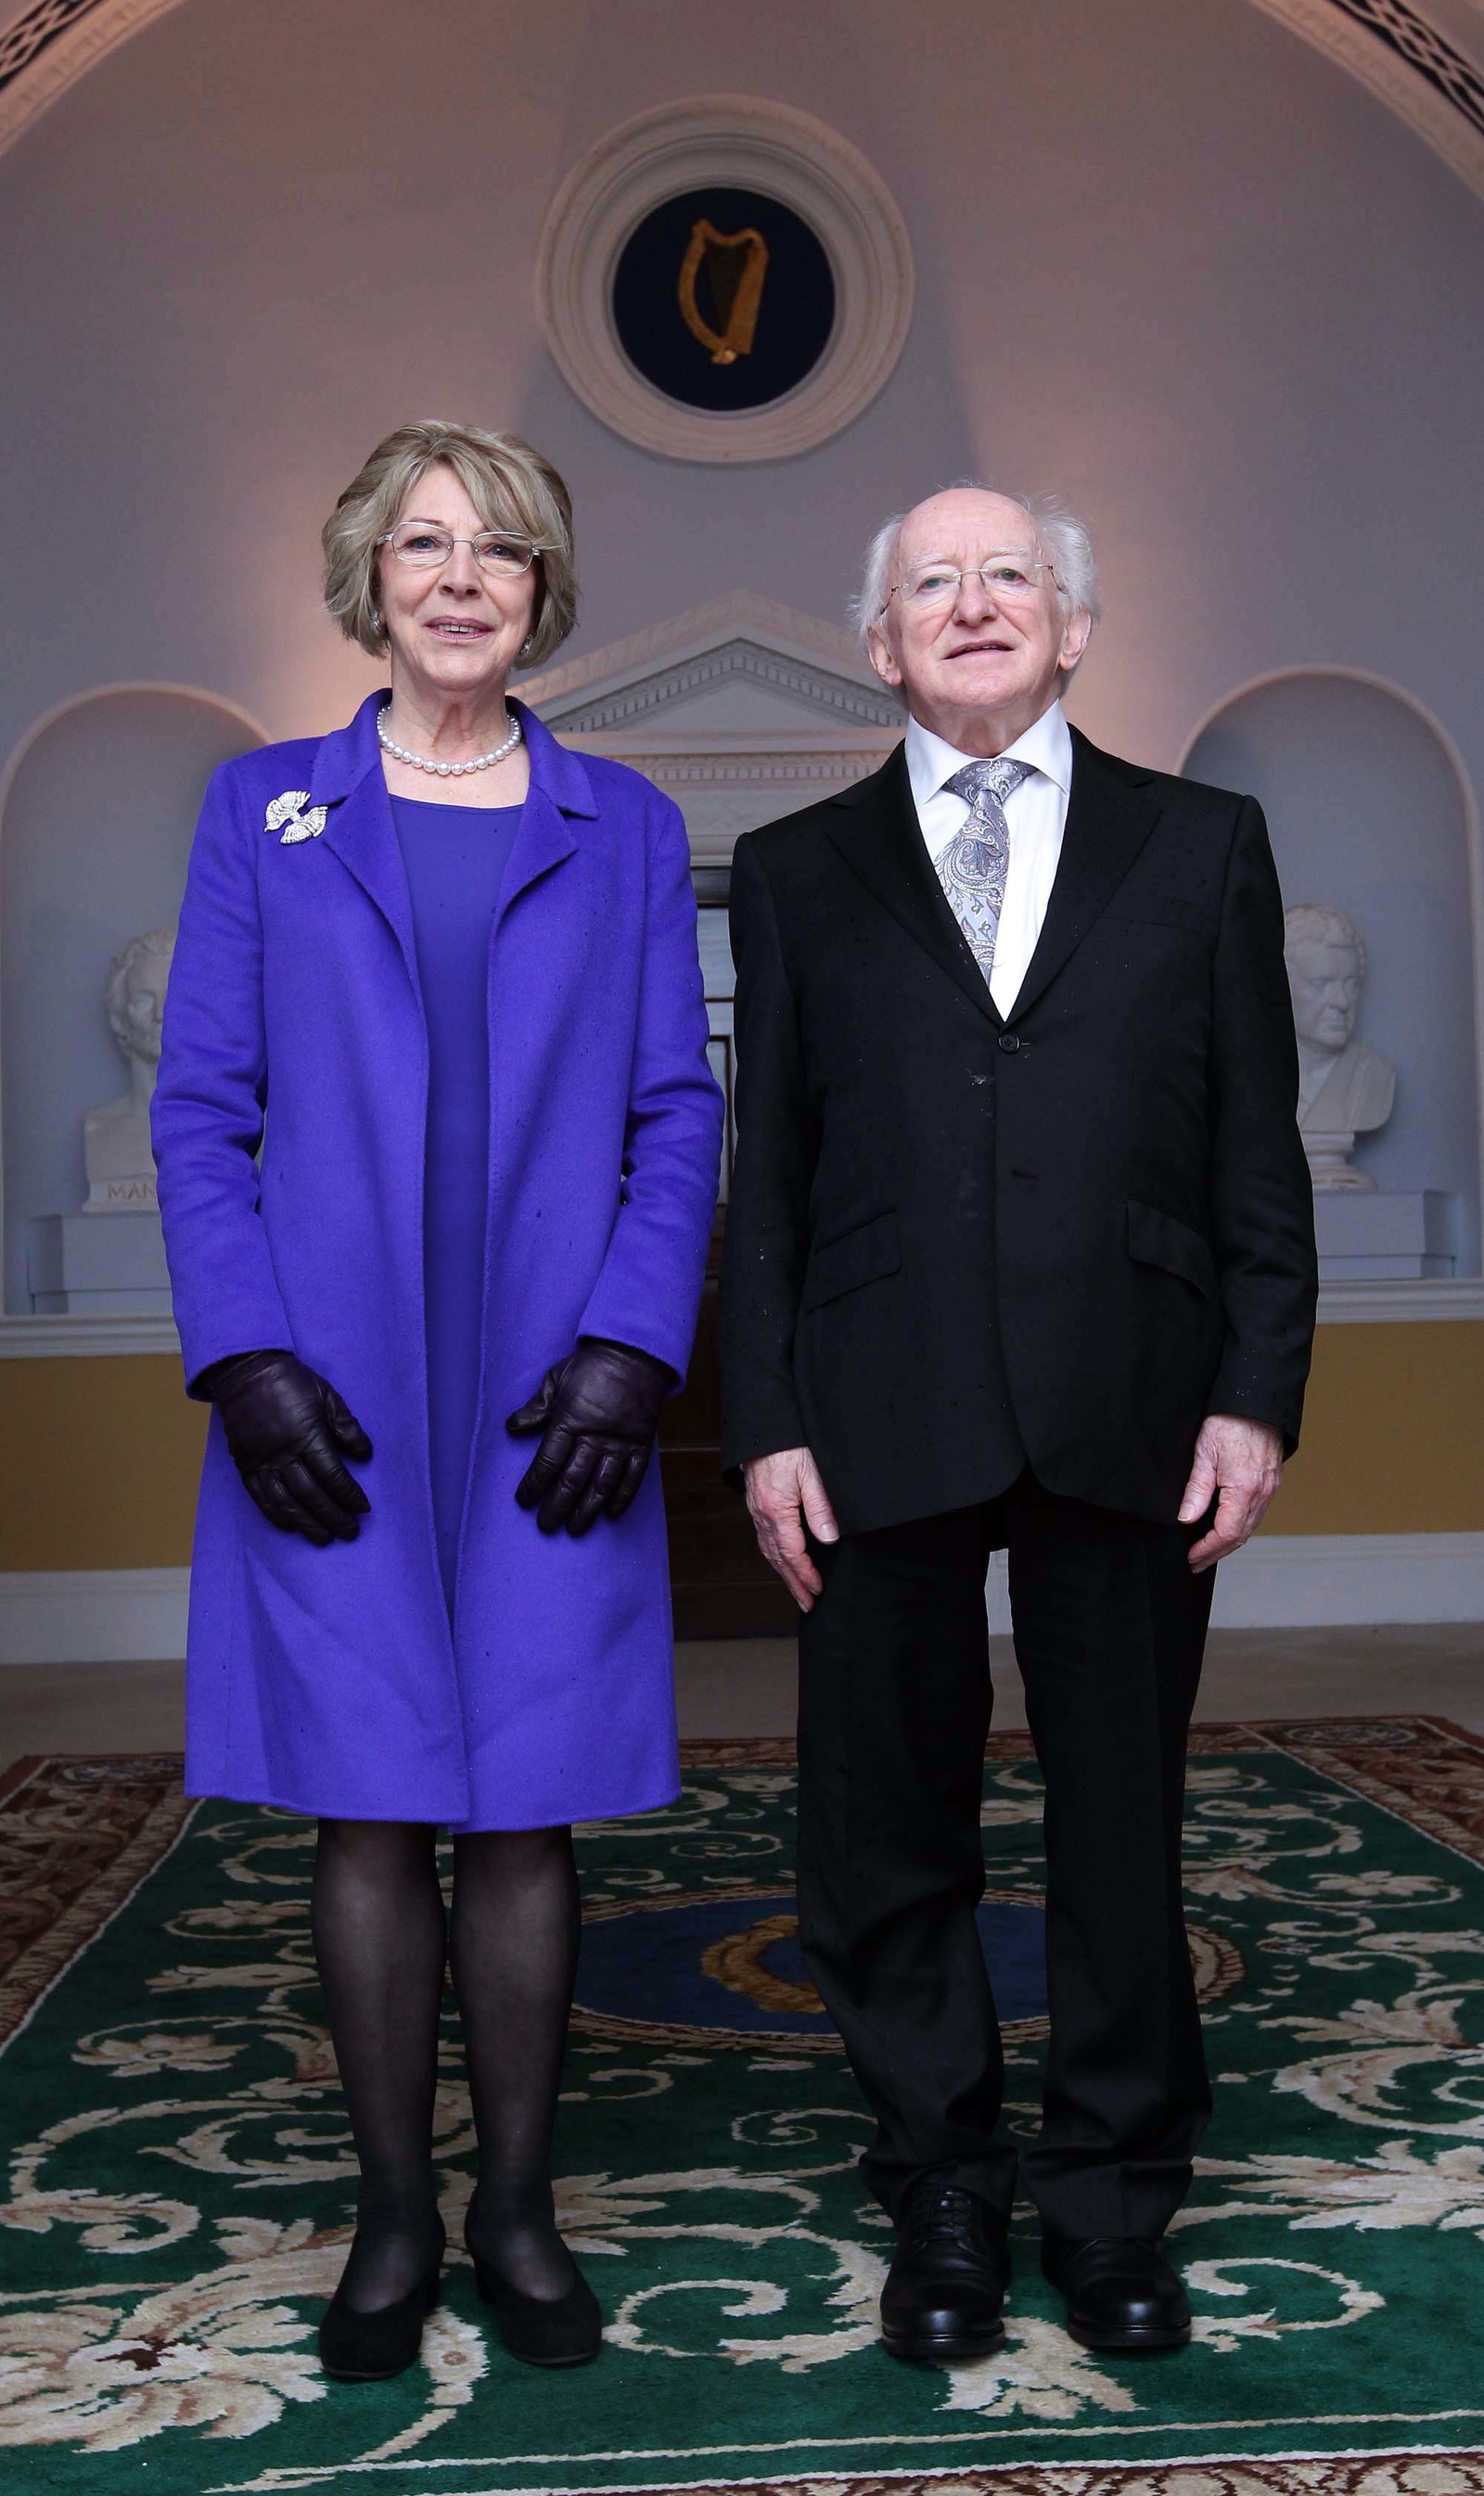 Image - Michael D Higgins with his wife Sabina at Áras an Uachtaráin